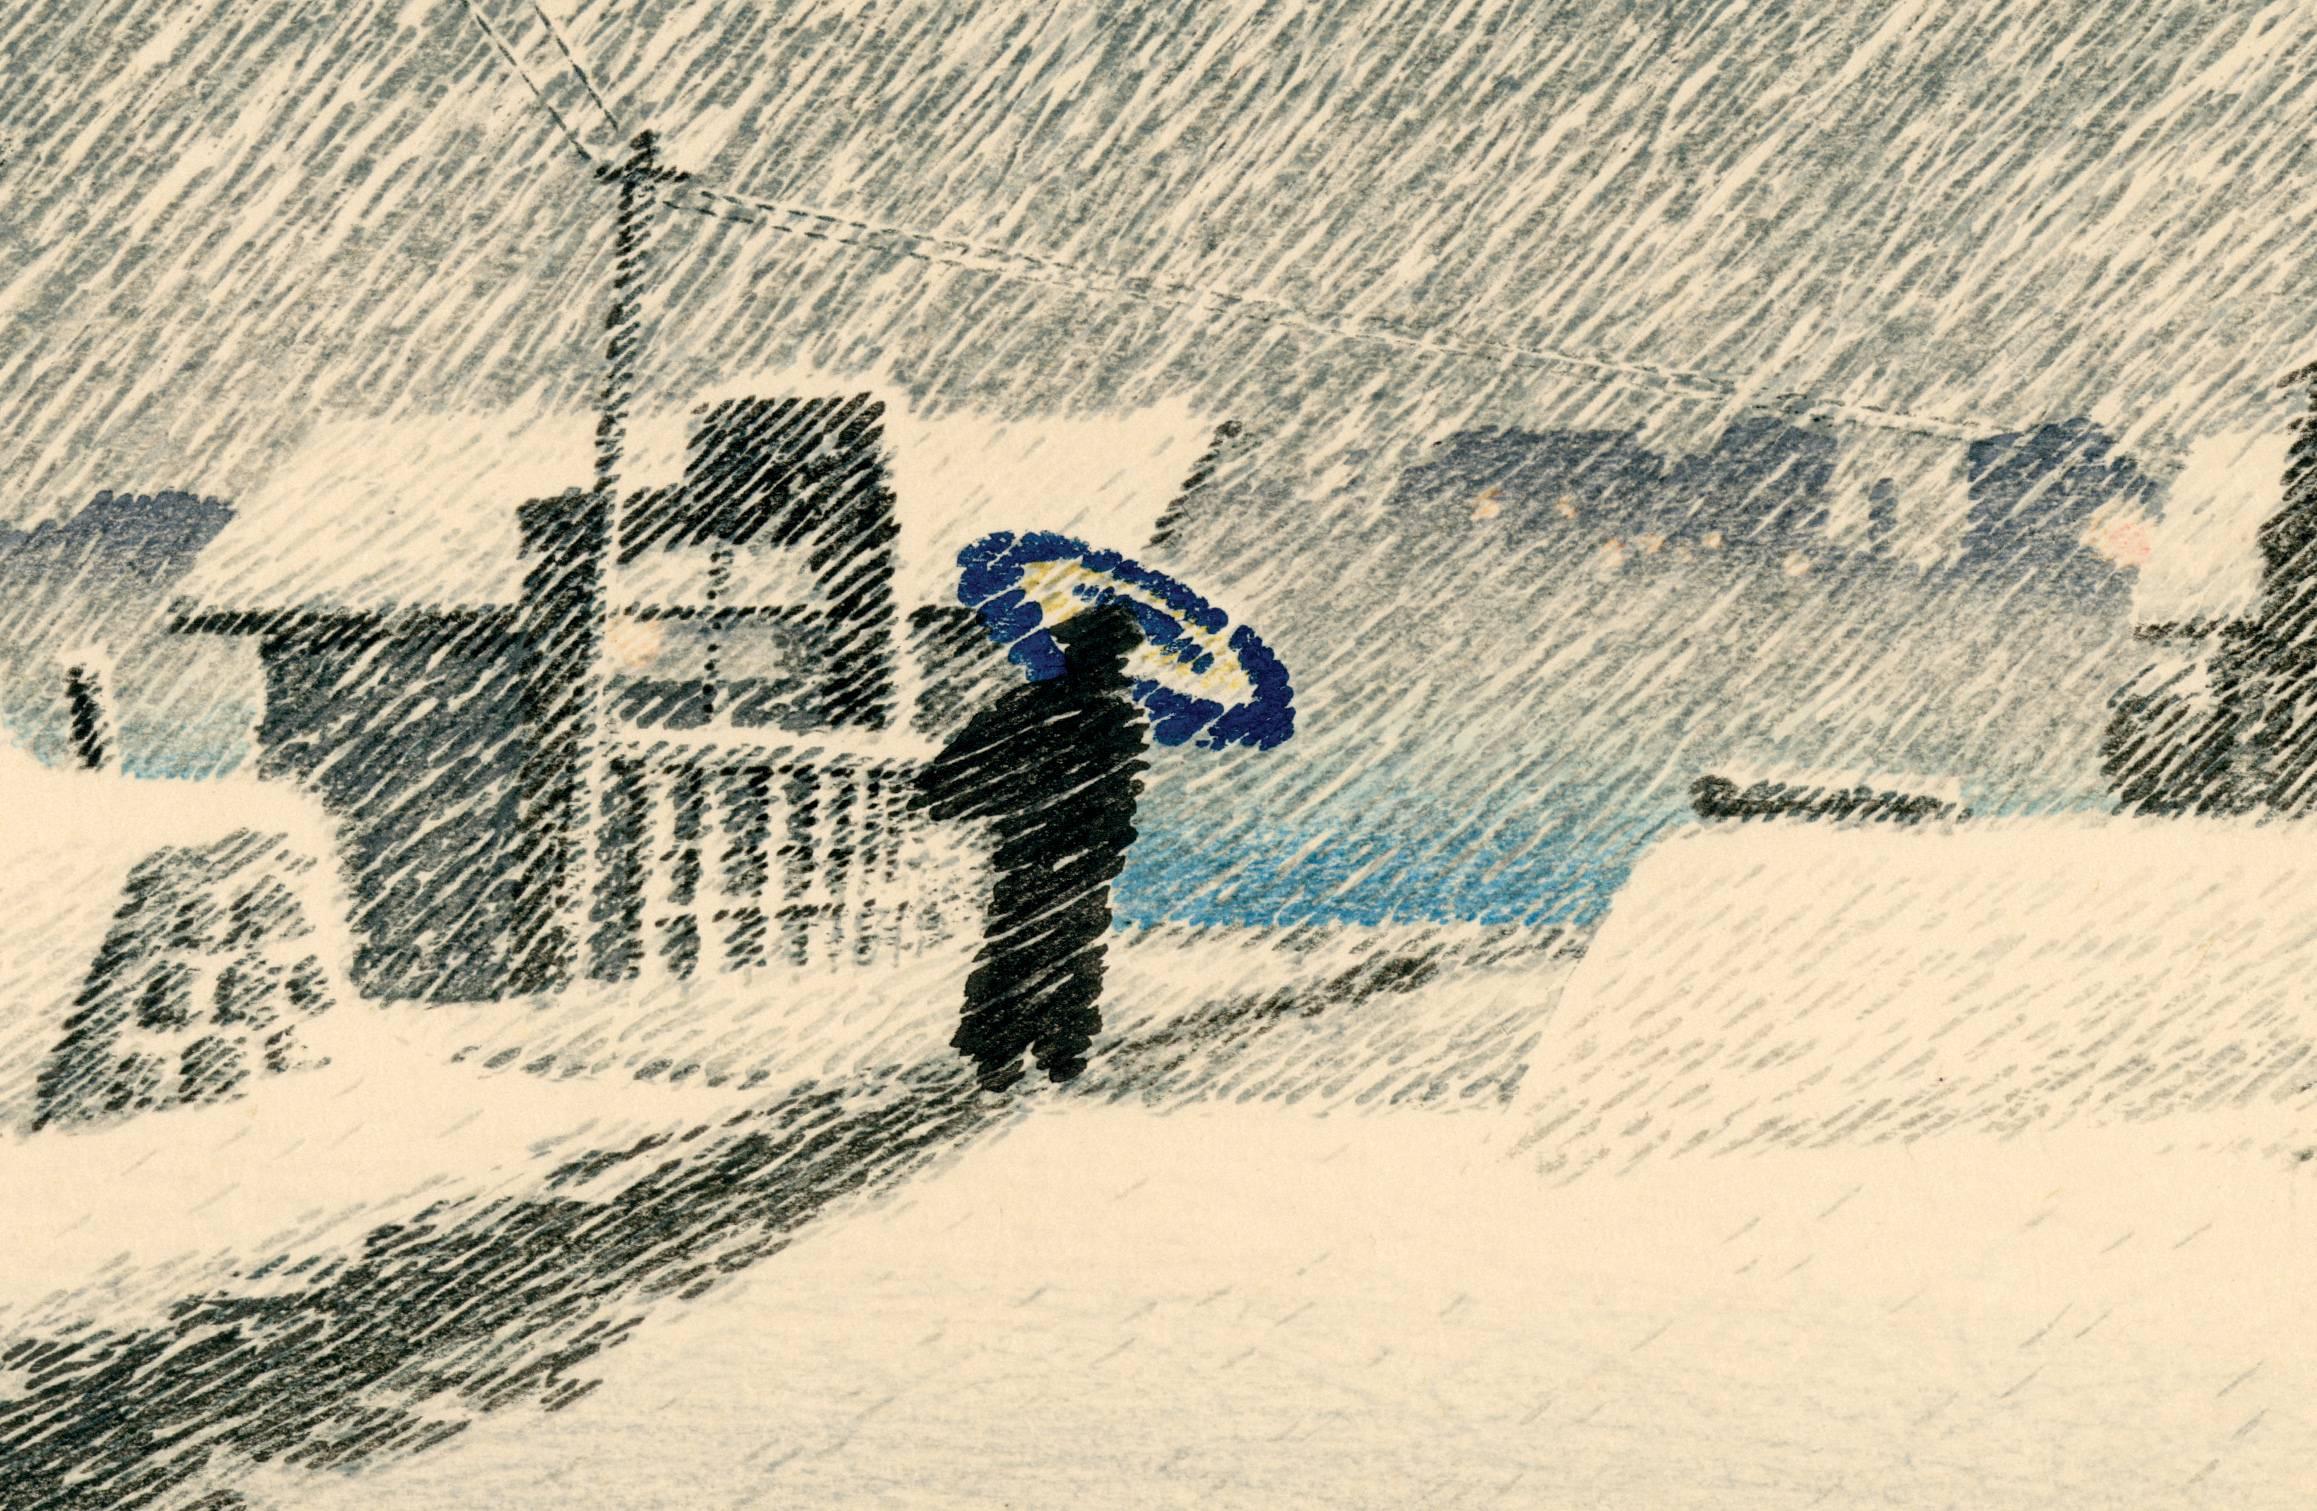 Snow at Tsukishima - Print by Kawase Hasui